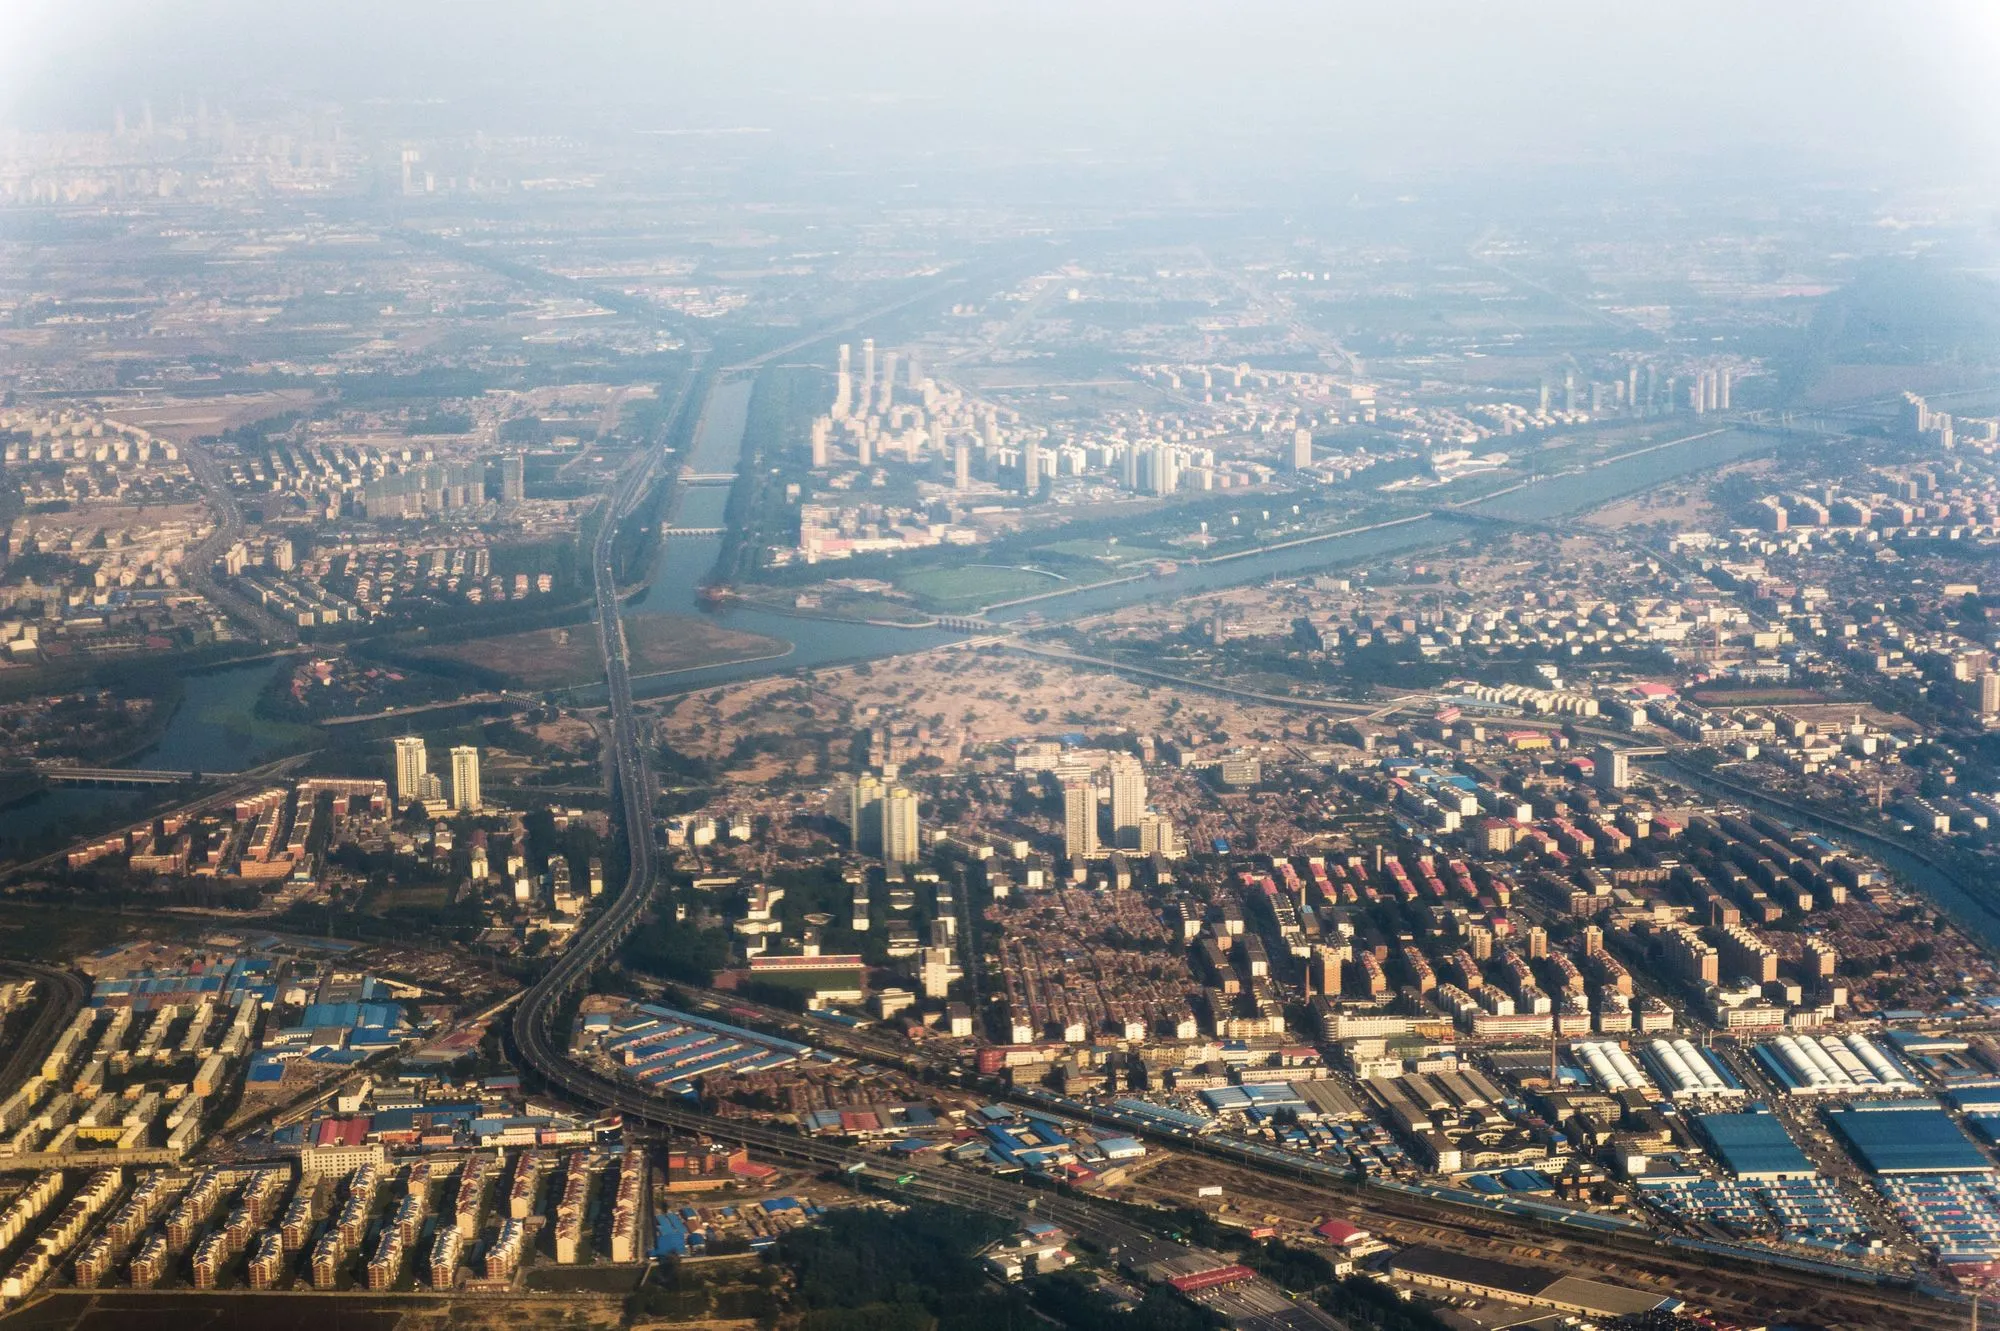 Une vue aérienne d'une banlieue à l'est de Pékin en 2010 montre un important nuage de pollution.